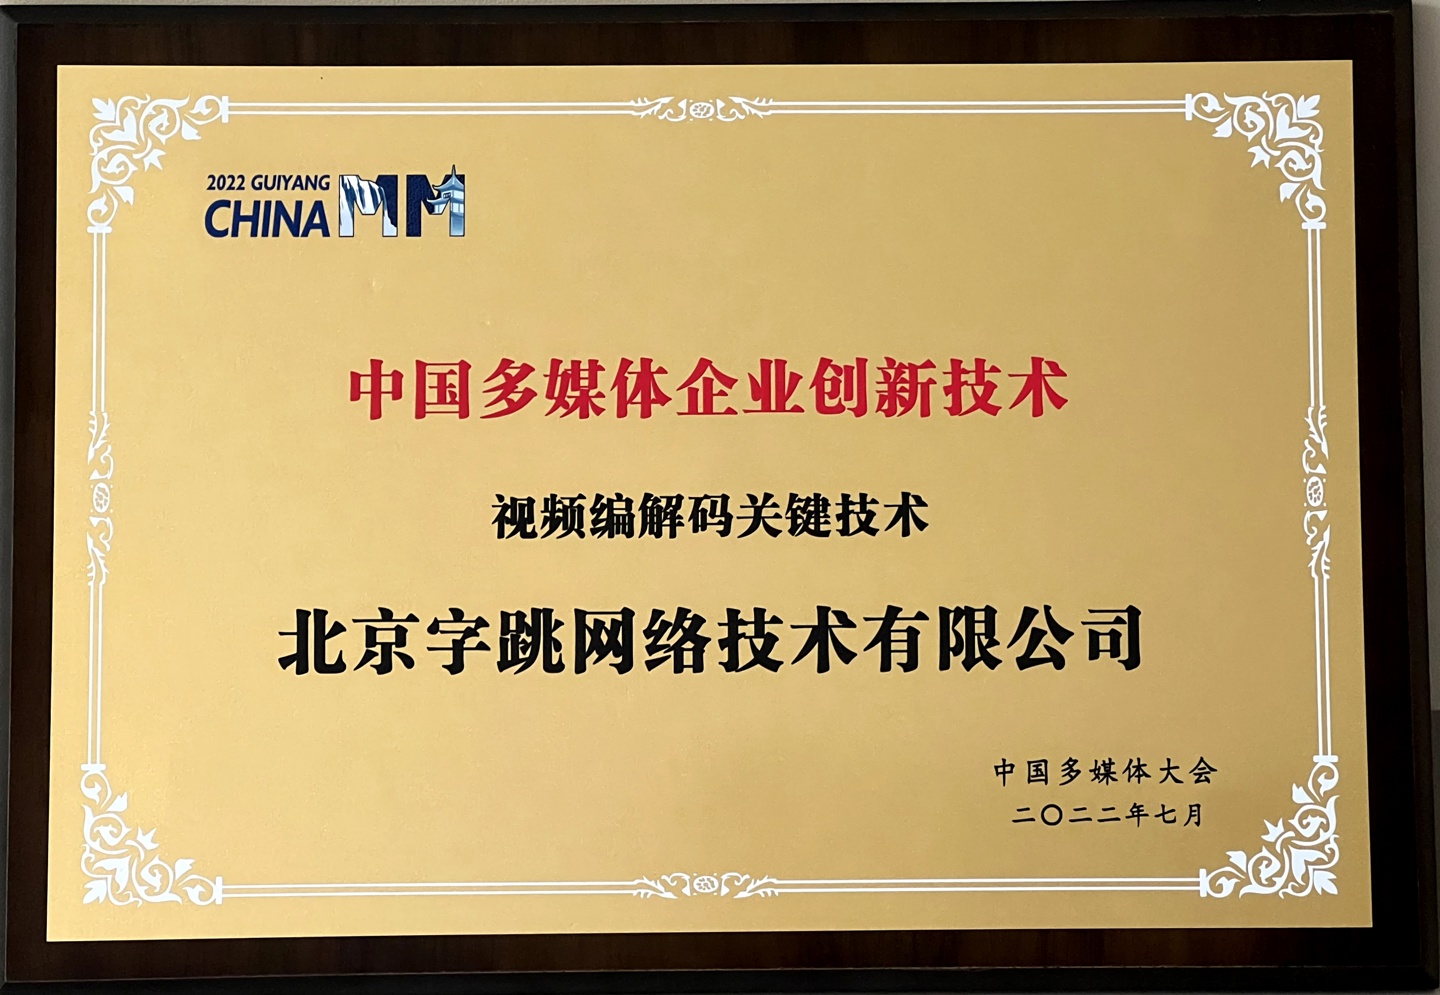 字节跳动获得中国多媒体企业创新技术奖